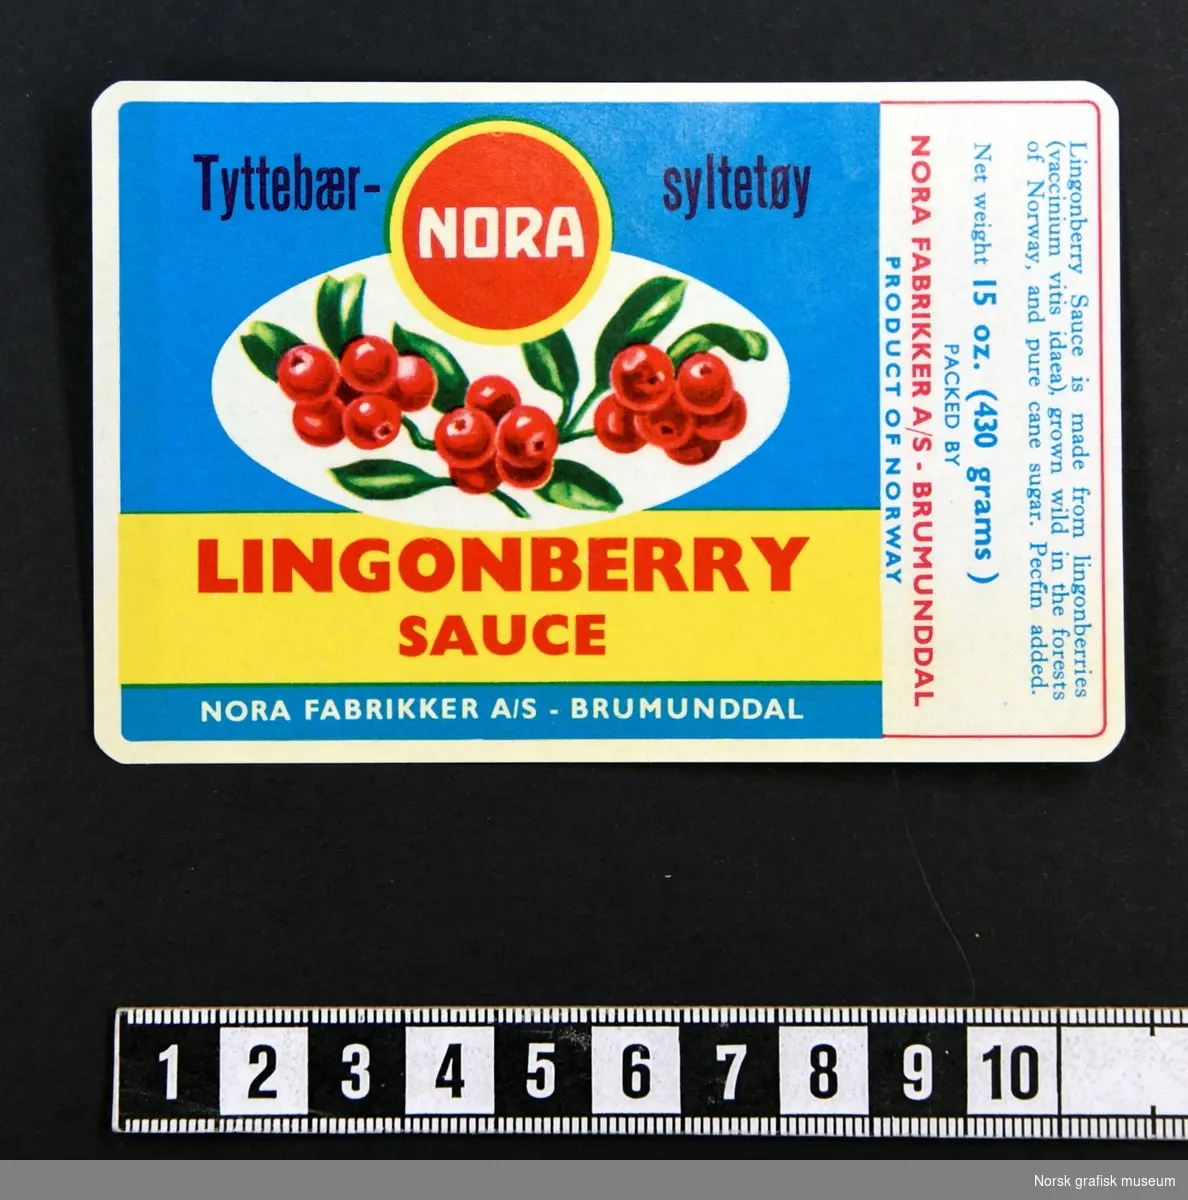 Etikett for tyttebærsyltetøy med blå bakgrunn, med en illustrasjon av tyttebær over varenavnet med rød tekst på gul bakgrunn.